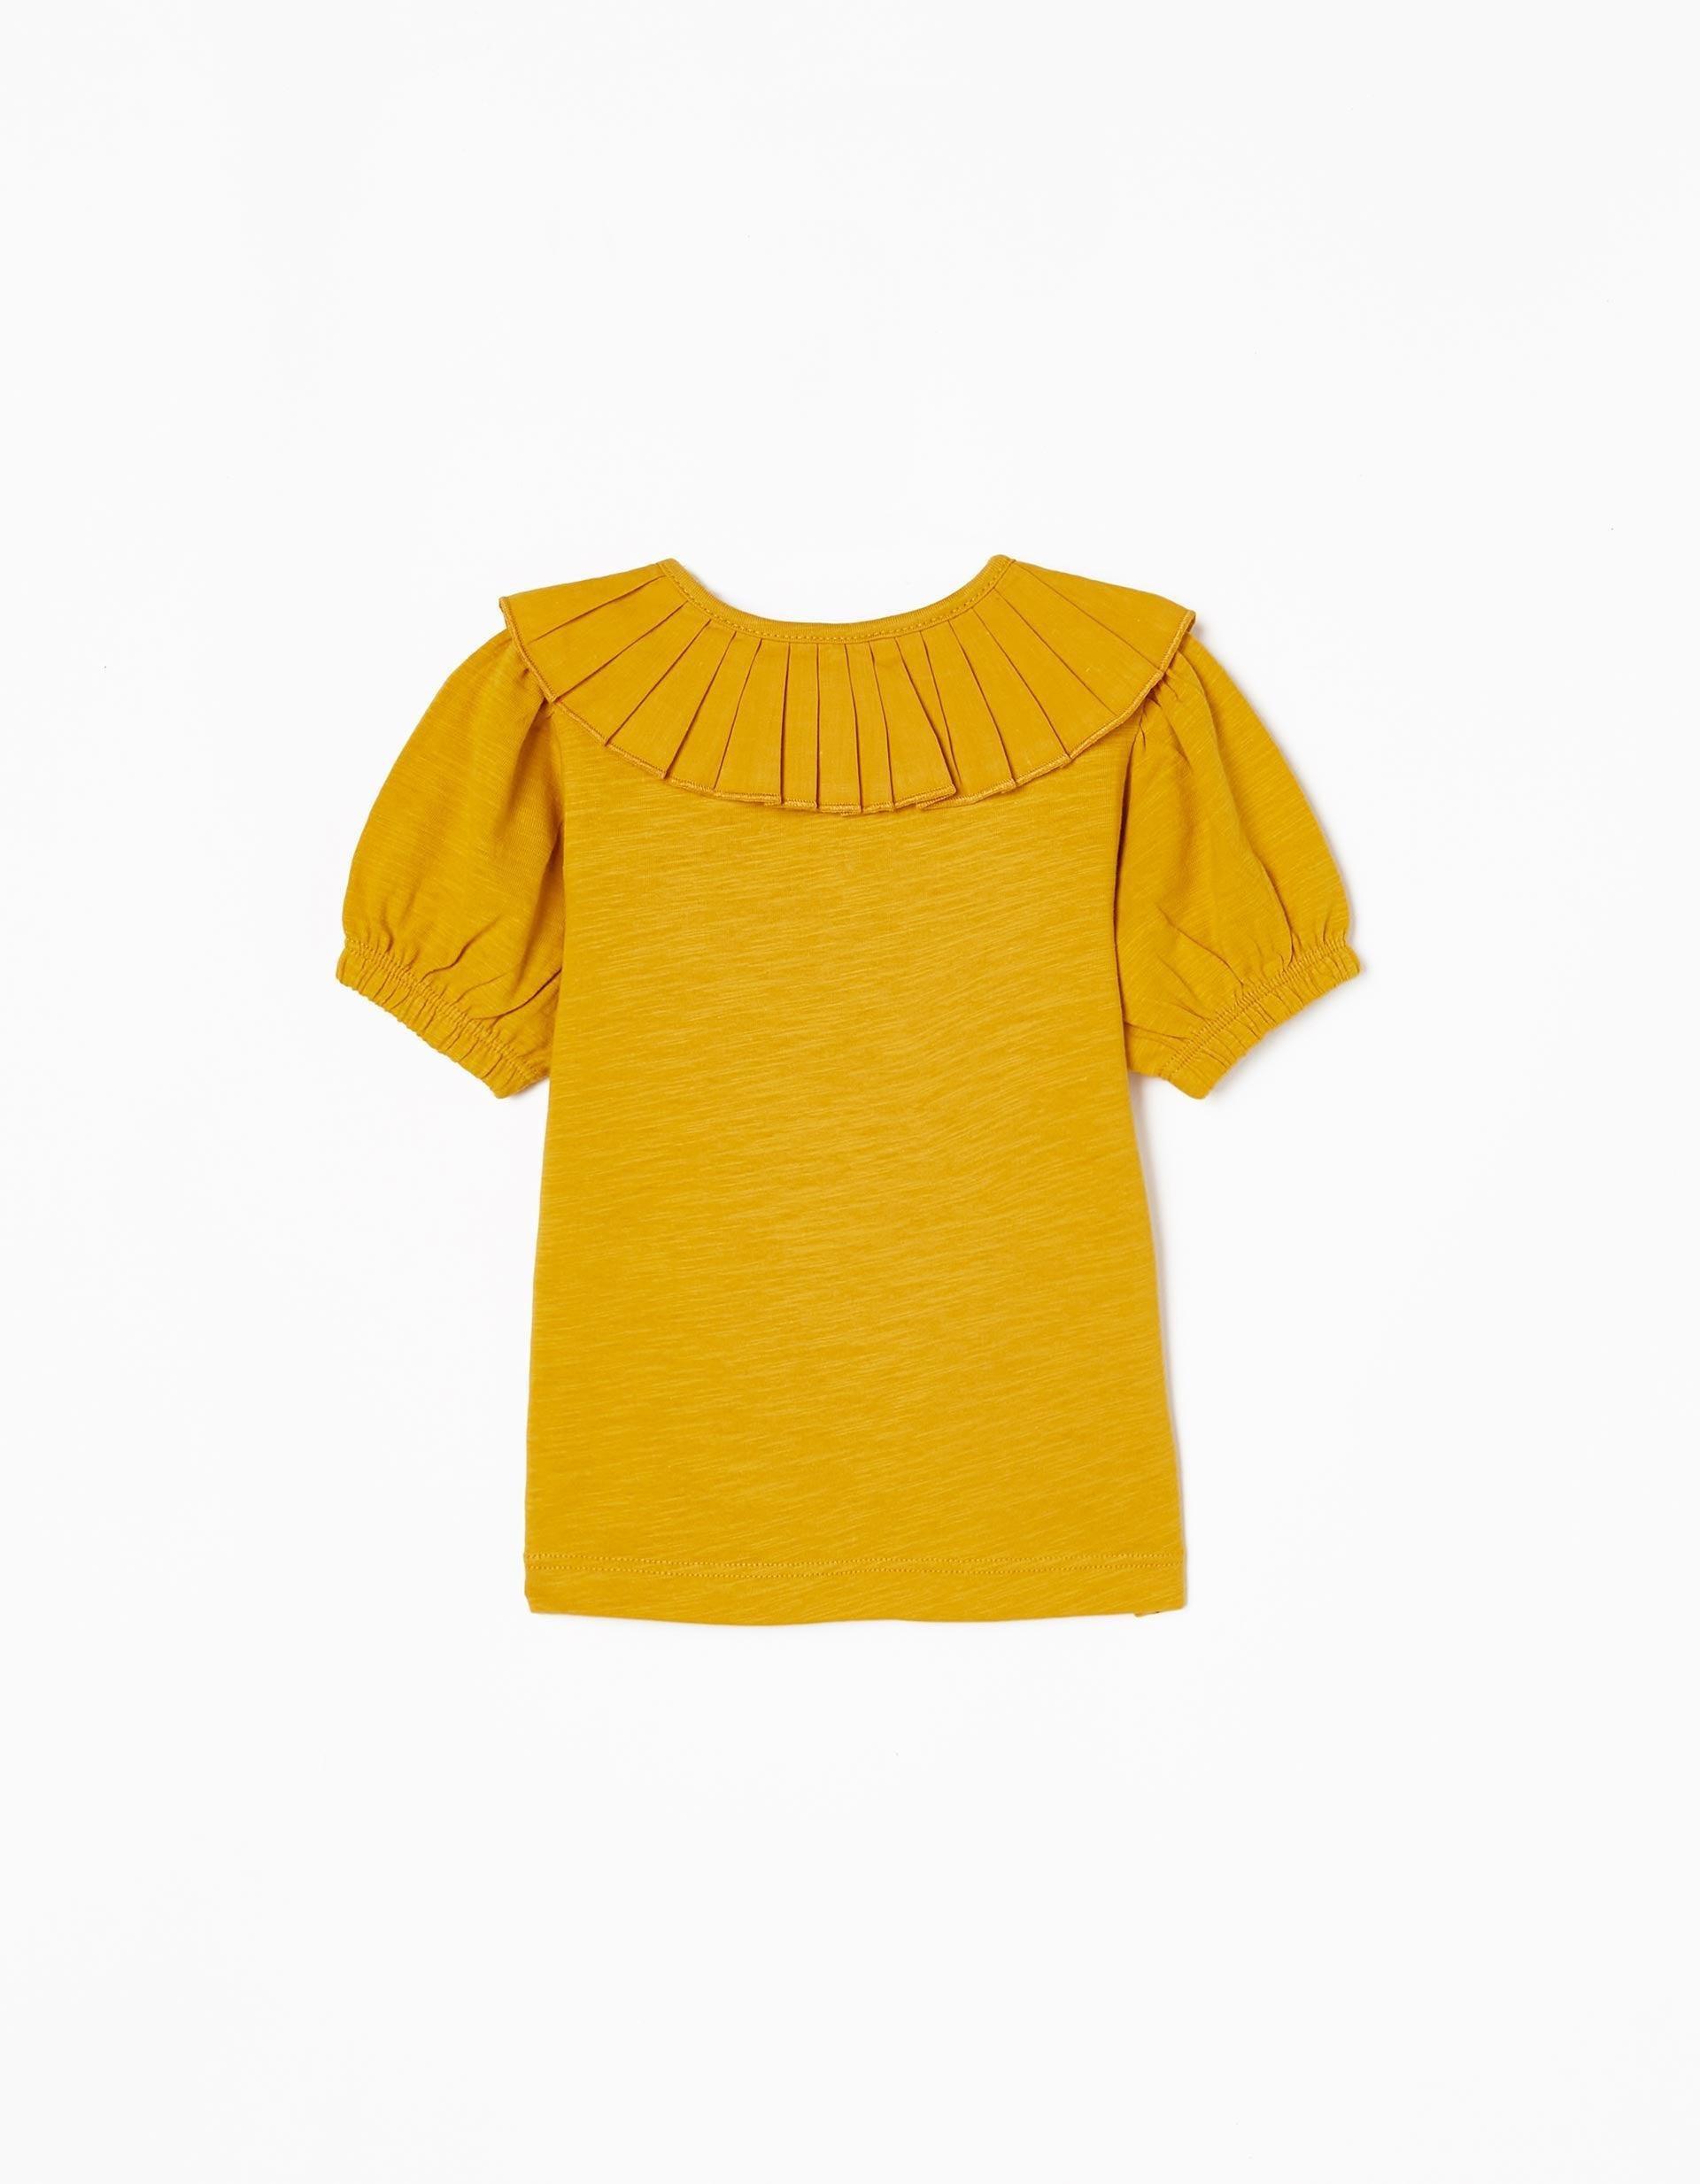 Gant - Yellow Pleated Collared T-Shirt, Baby Girls